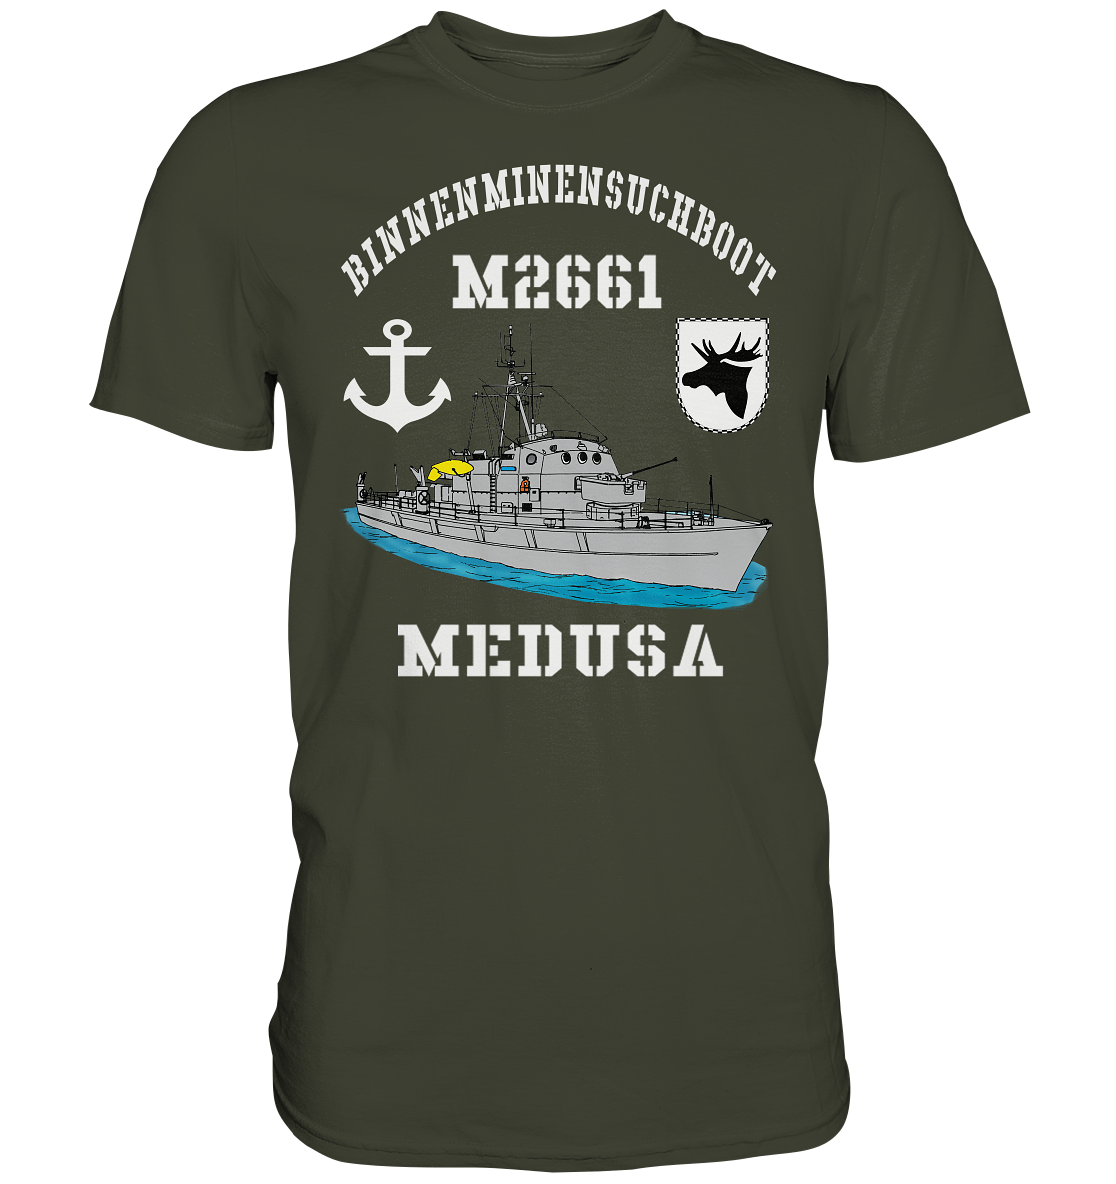 BiMi M2661 MEDUSA 3.MSG Anker - Premium Shirt